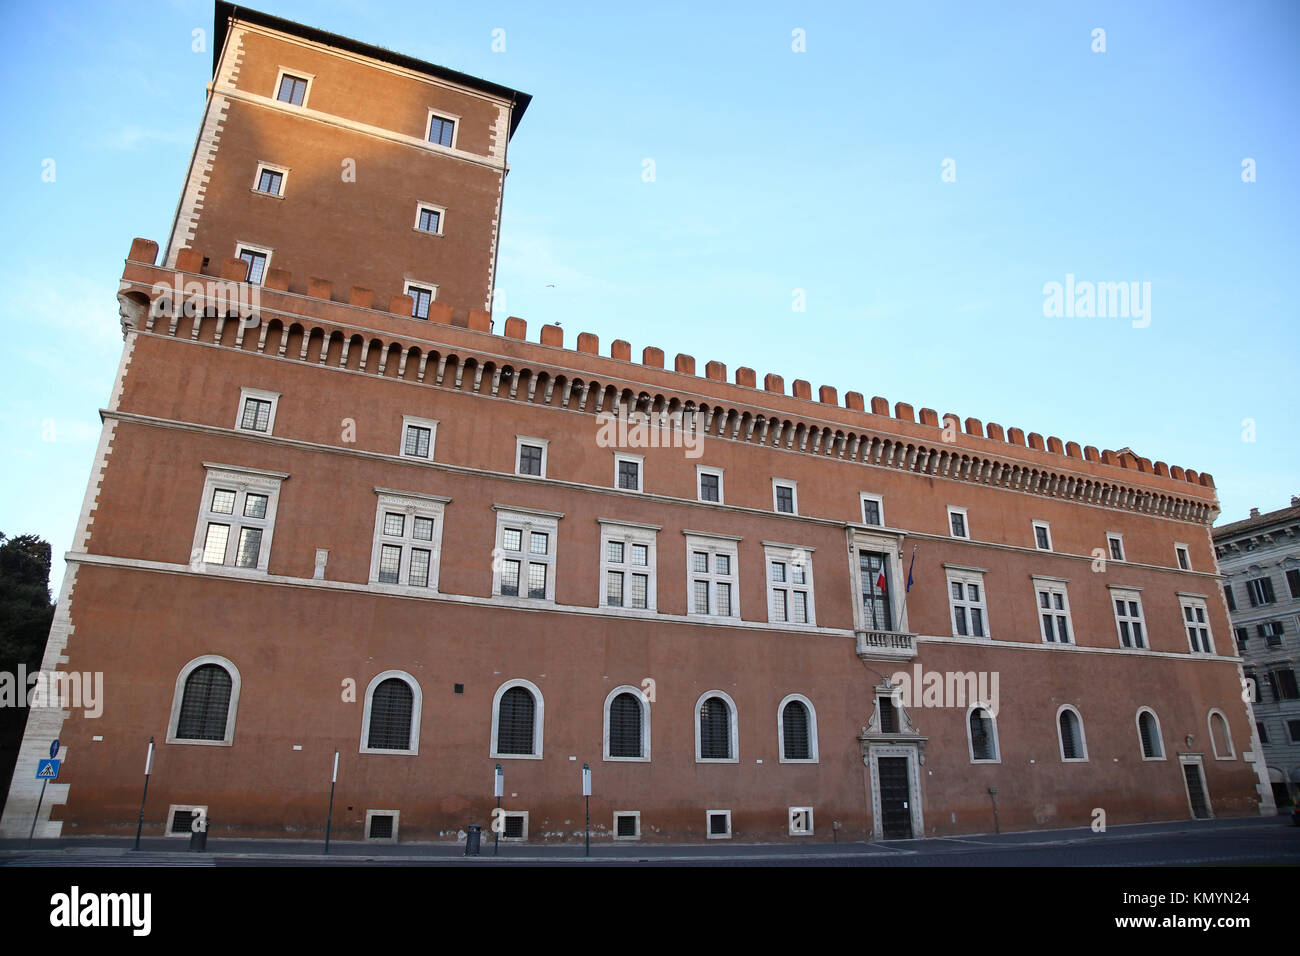 La piazza venezia à Rome, Italie, la construction d'un balcon où il parle de Duce Benito Mussolini Banque D'Images